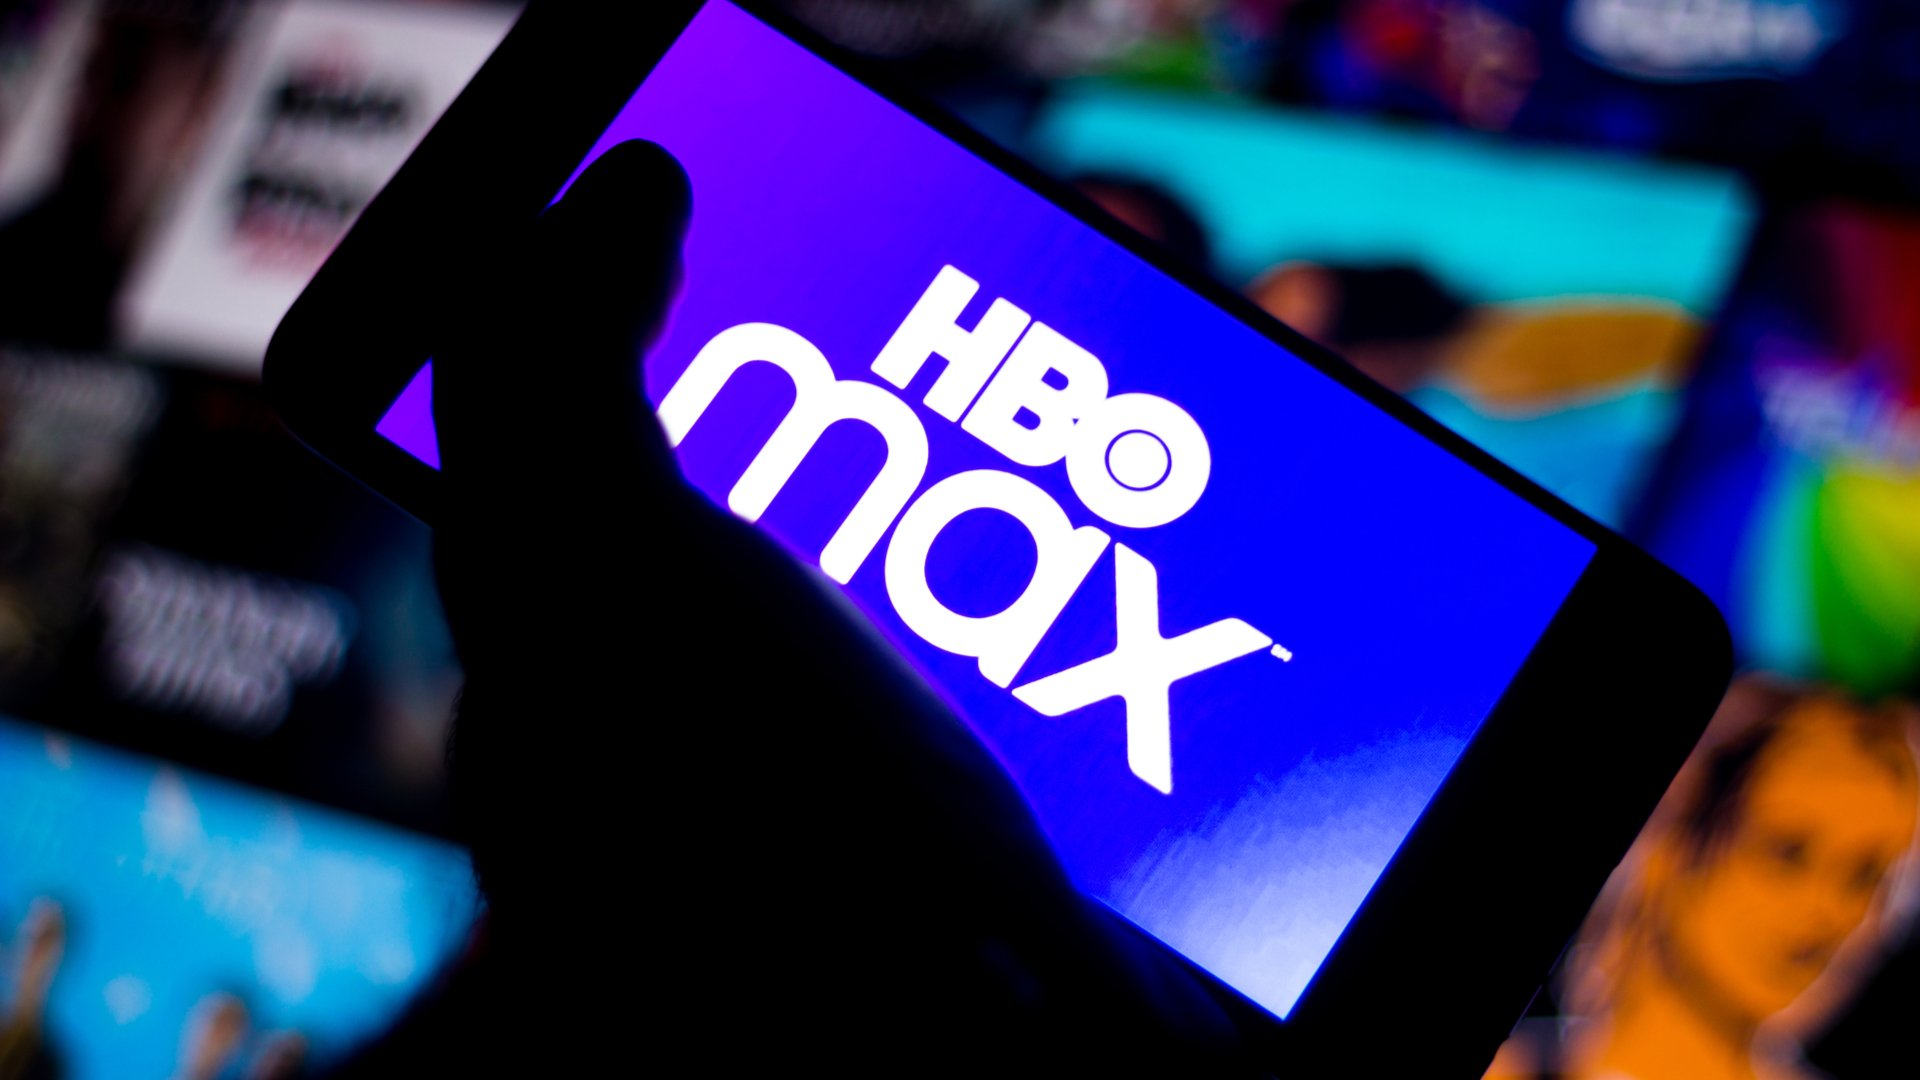 Lançamentos HBO MAX Abril 2022